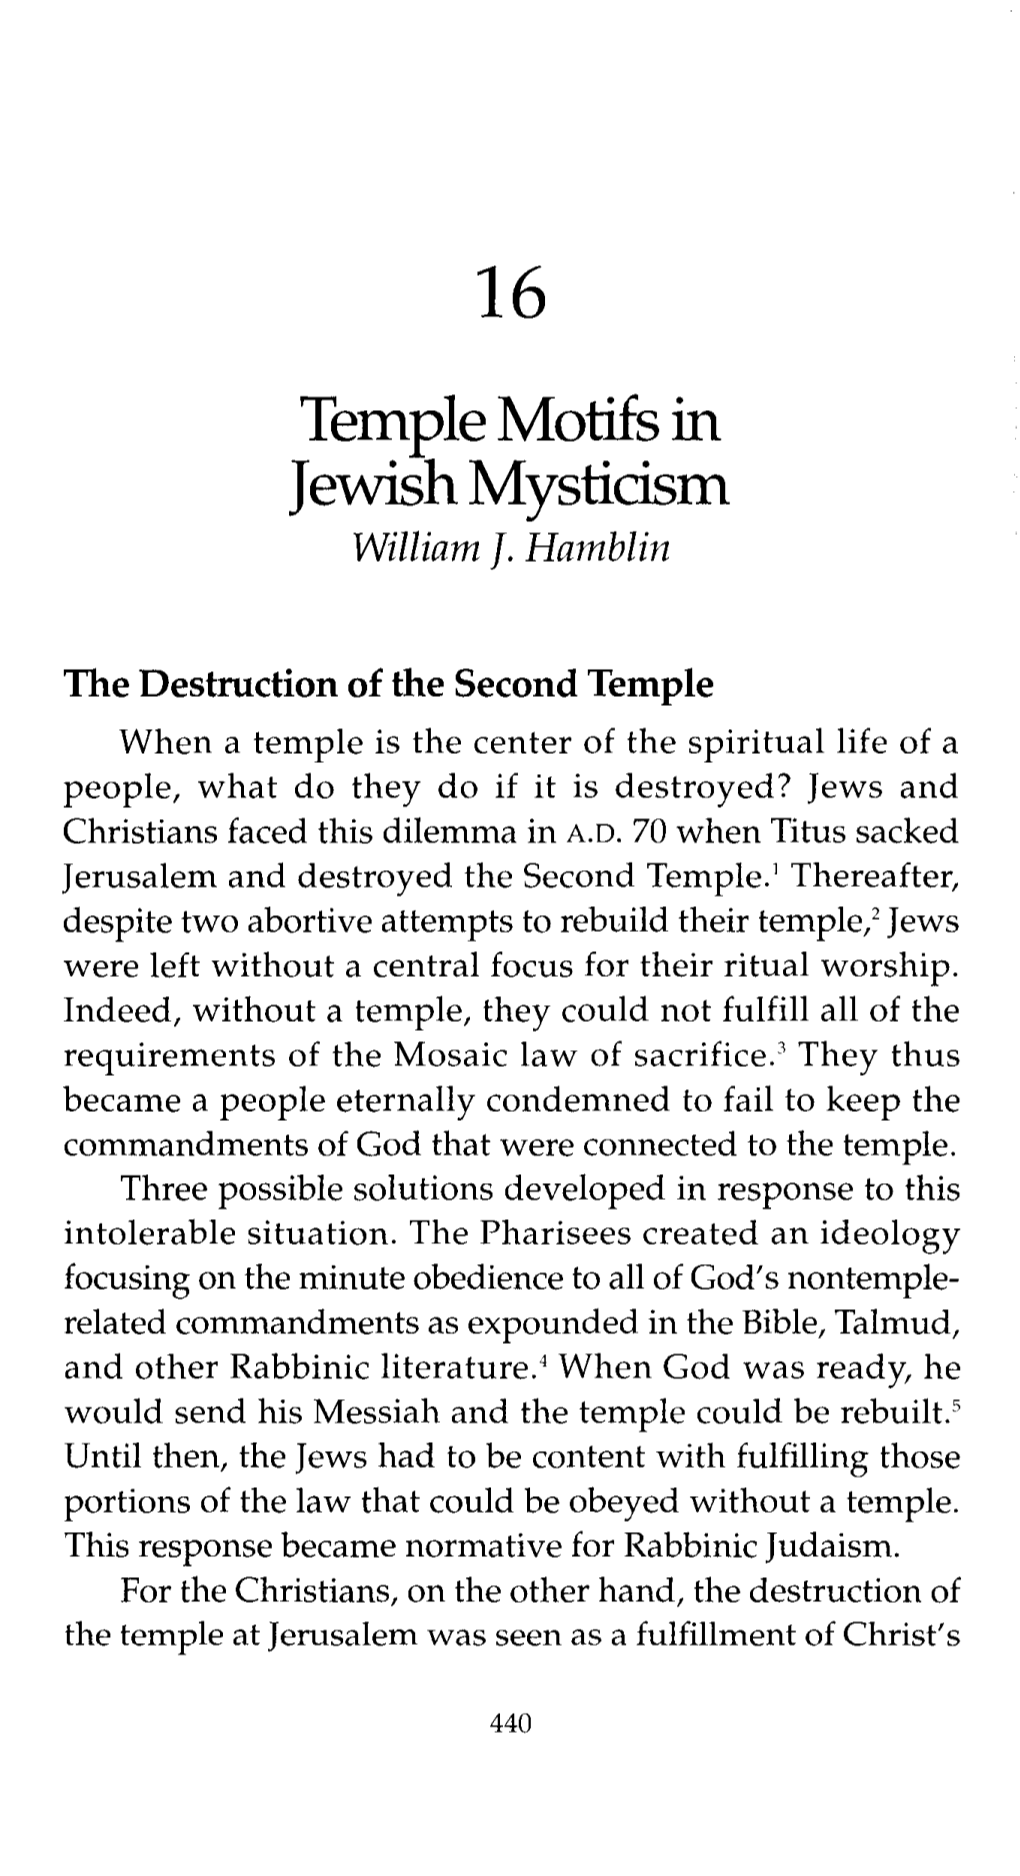 TEMPLE MOTIFS in JEWISH MYSTICISM 441 Prophecy (Found in Matthew 24:1-2; Mark 13:1-2; Luke 21:5-6)